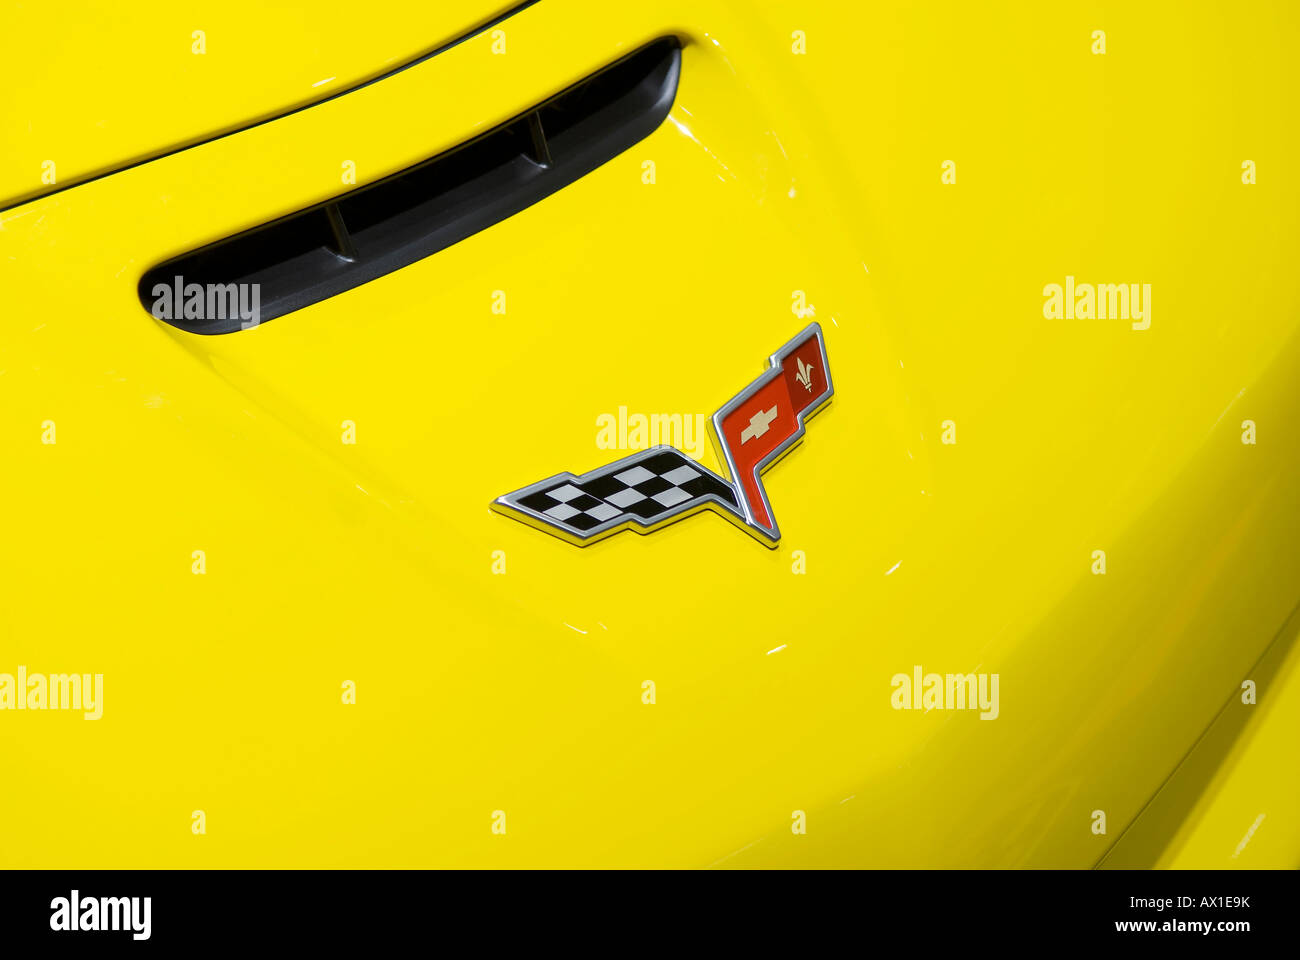 chevrolet corvette bonnet and emblem Stock Photo